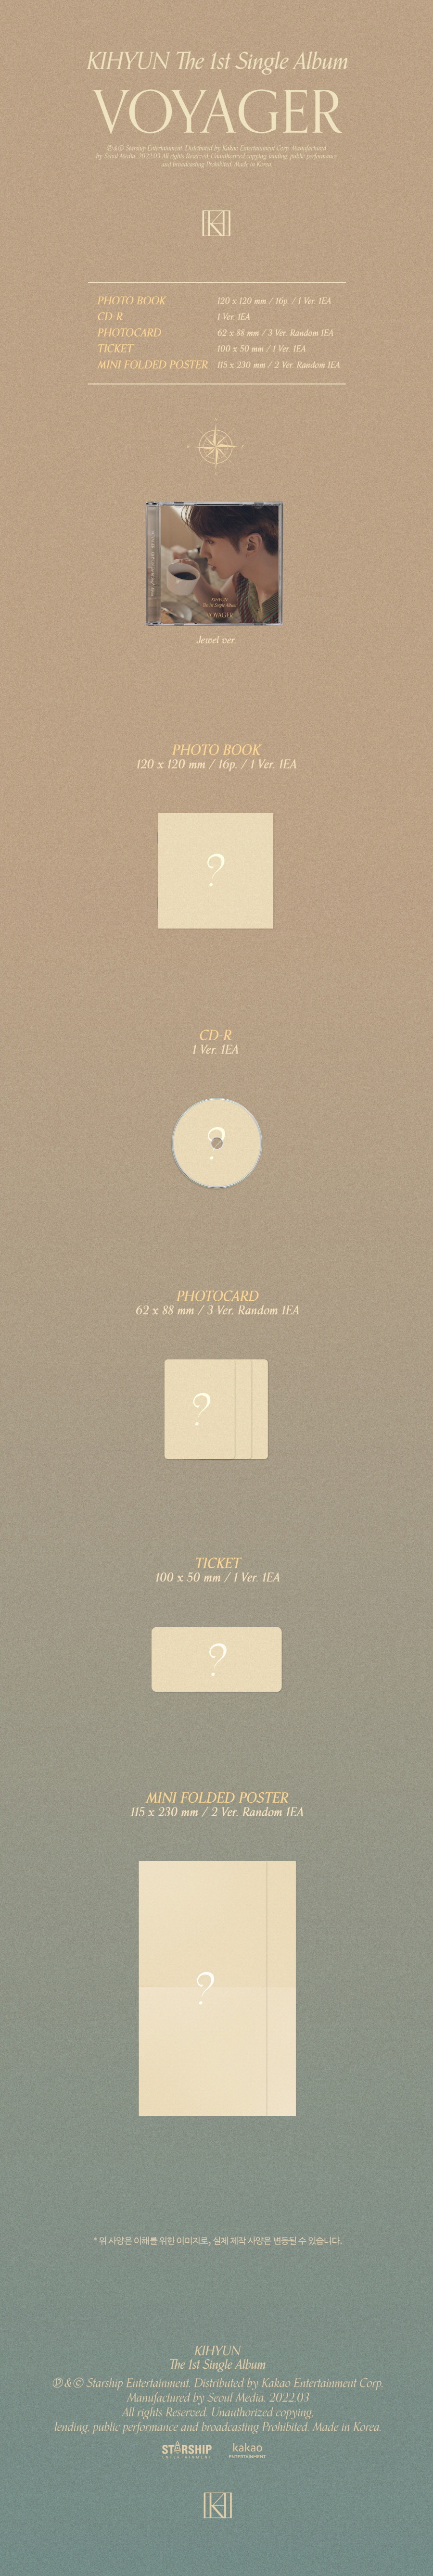 KIHYUN (MONSTA X) - 1st Single Album [VOYAGER](JEWEL VER.) voyager voyageralbum monstax kihyun KIHYUNalbum KIHYUNVOYAGER